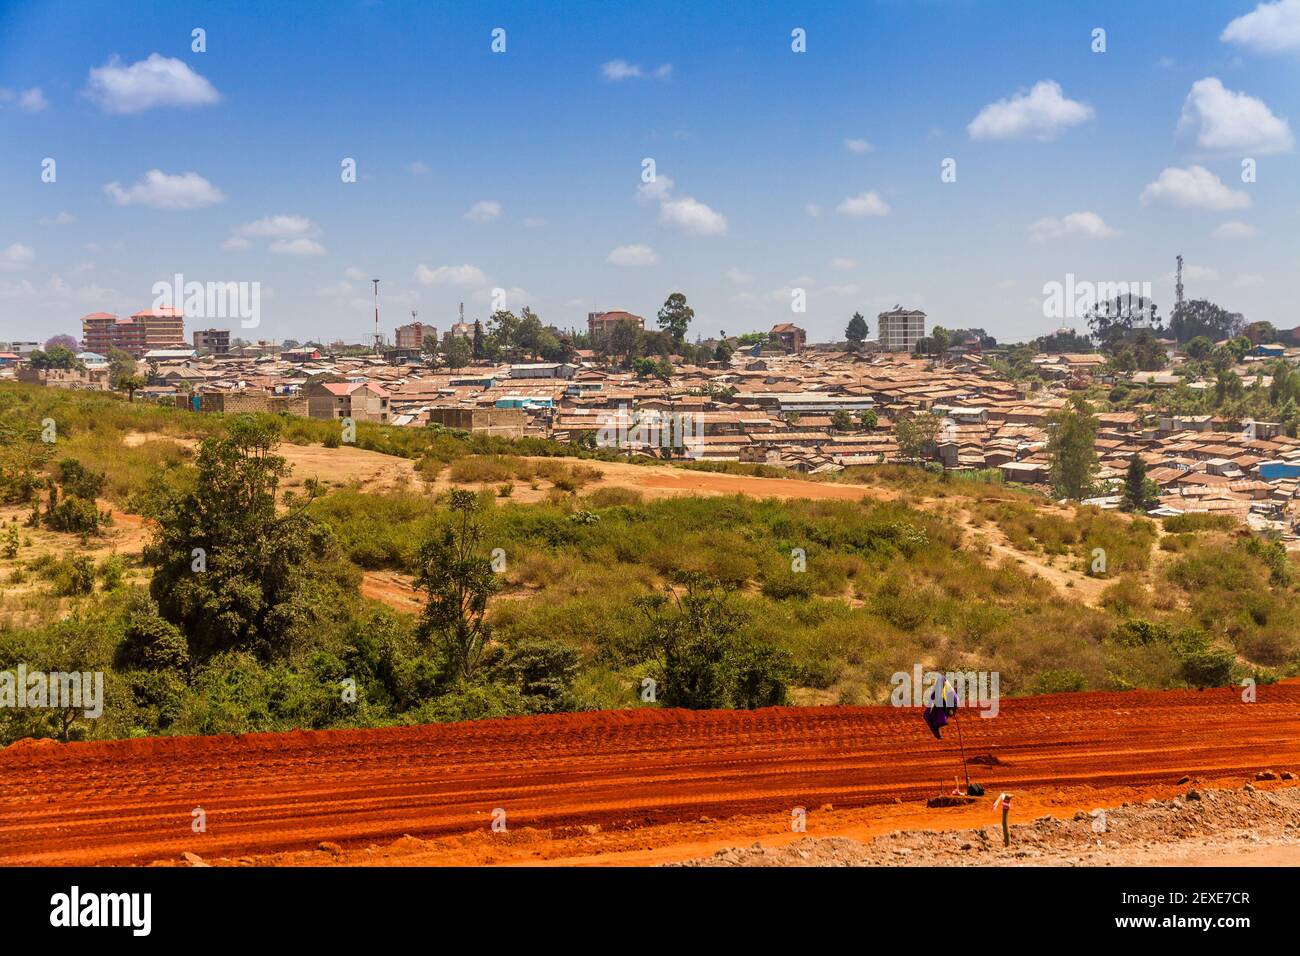 Un camino de tierra roja hacia los barrios de tugurios de Kibera en Nairobi, Kenia. Foto de stock